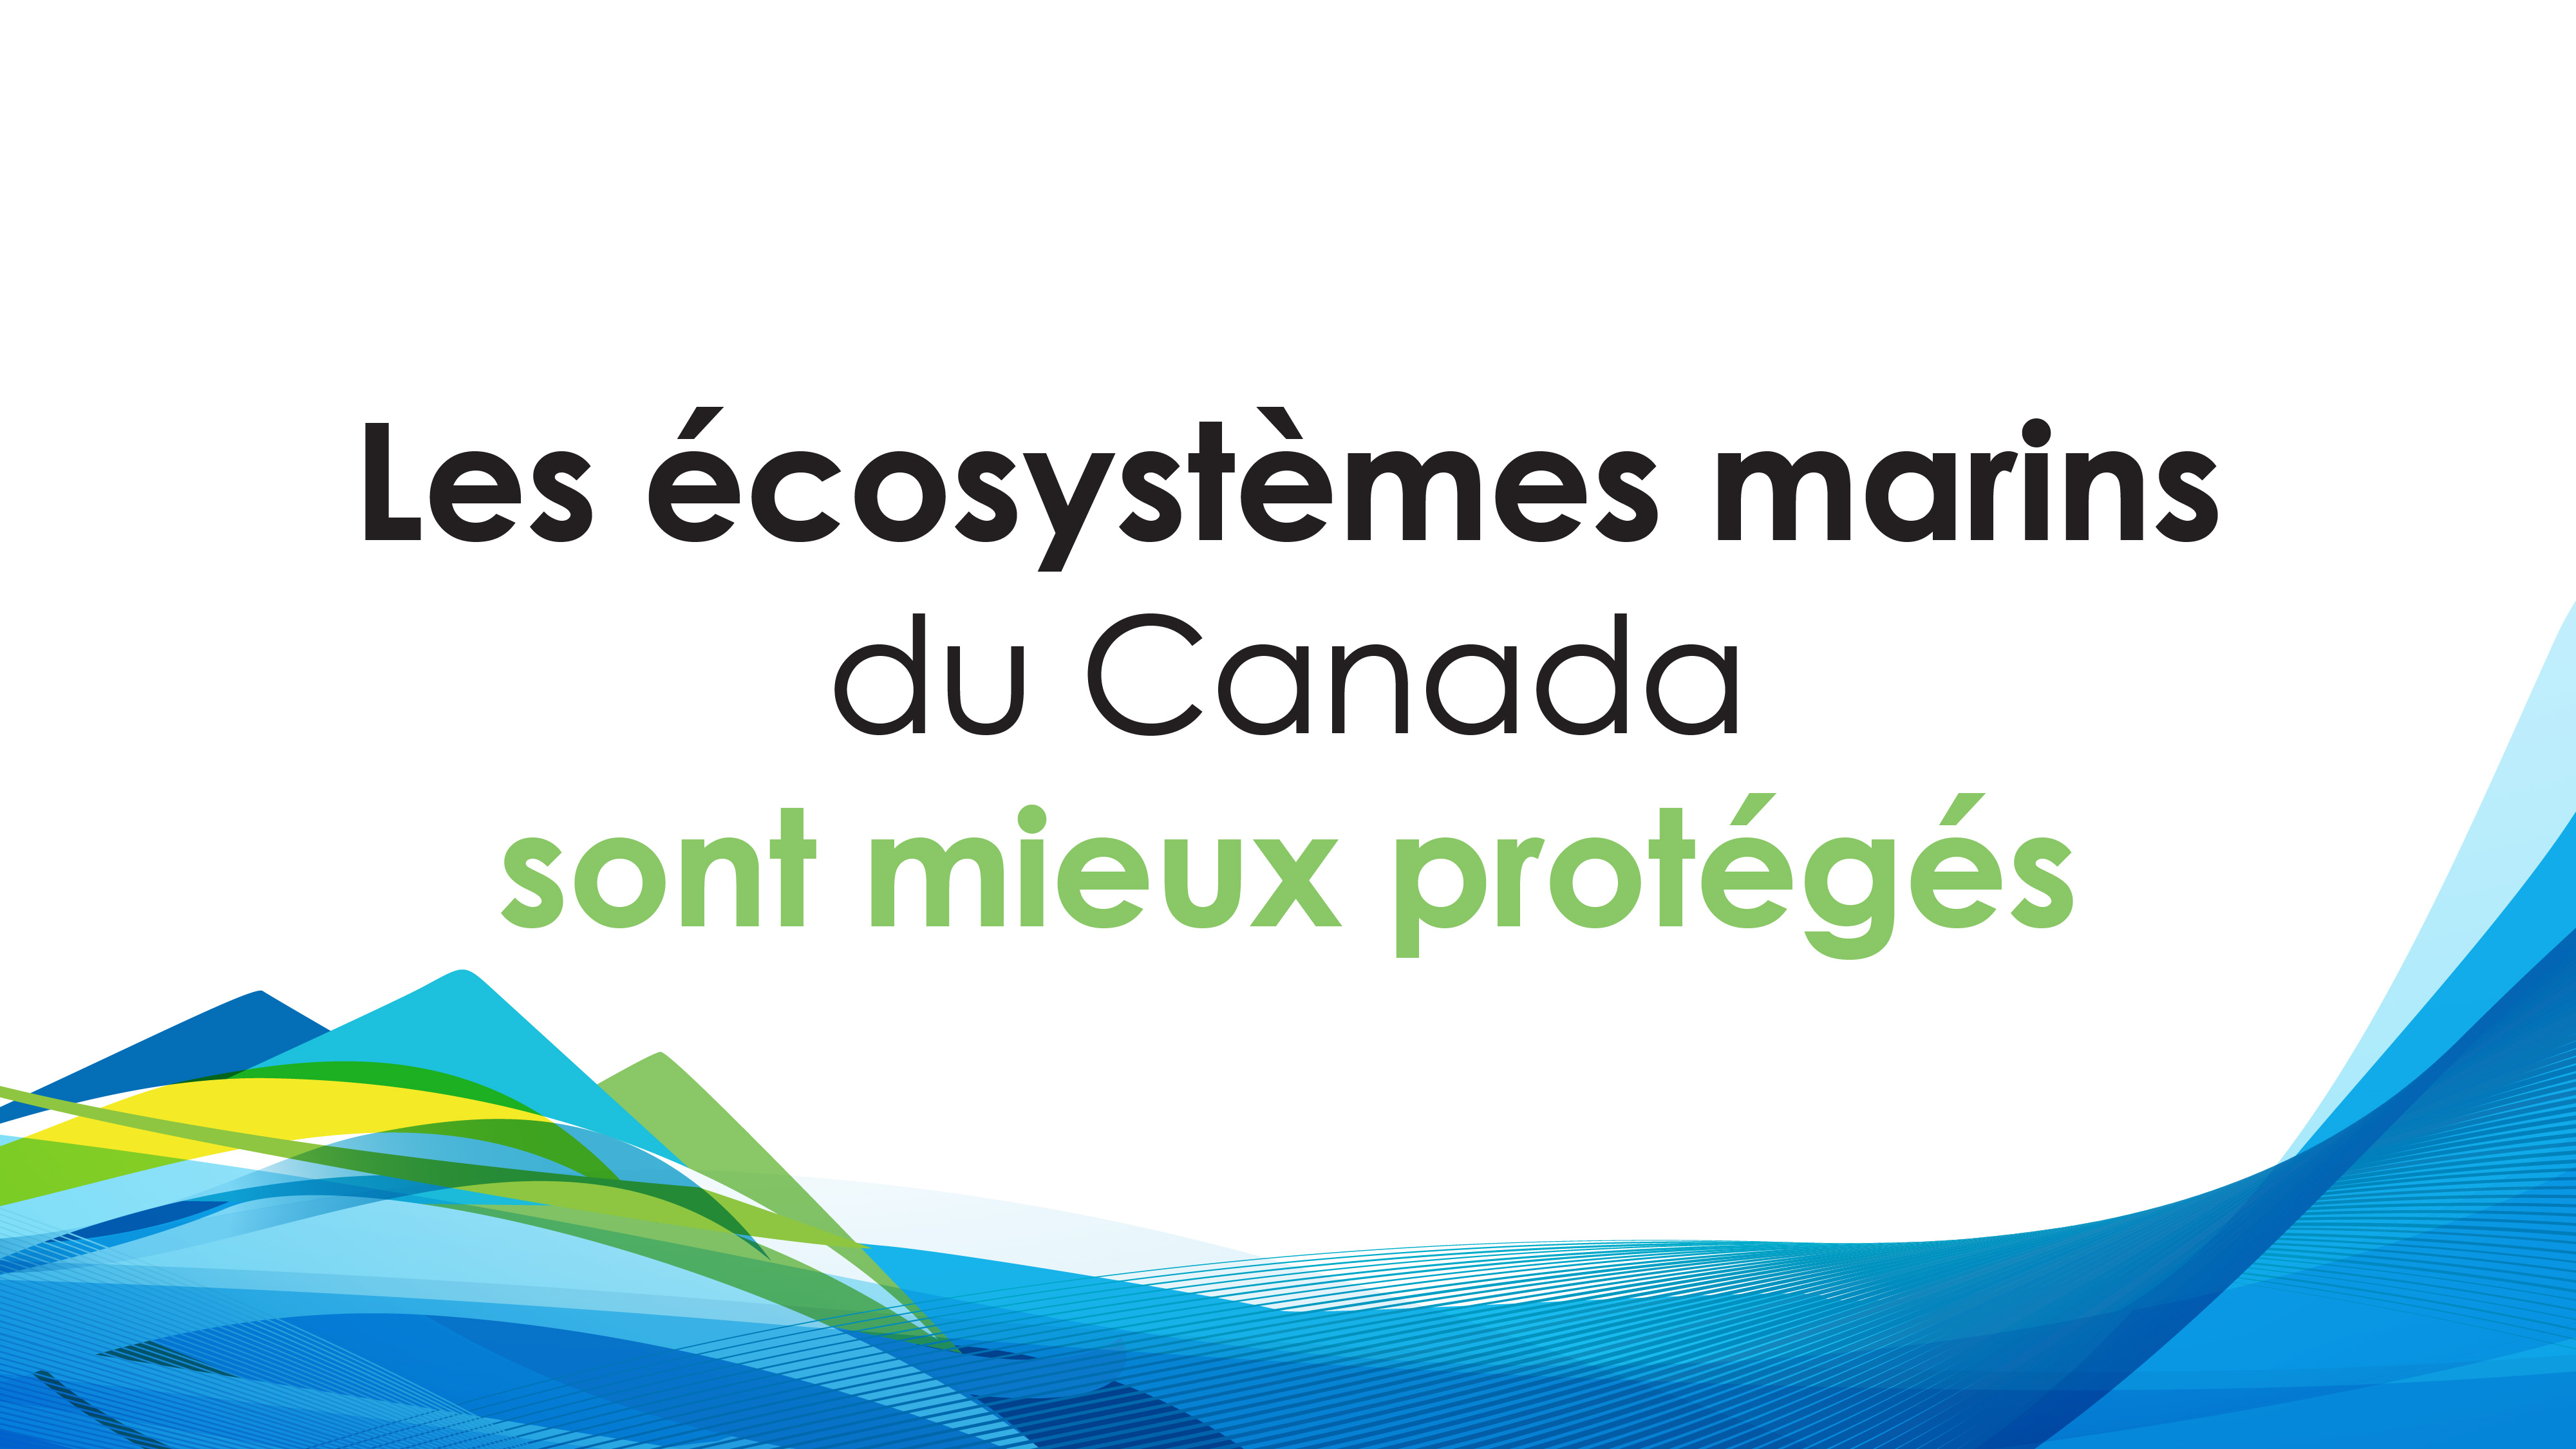 Les écosystèmes marins du Canada sont mieux protégés